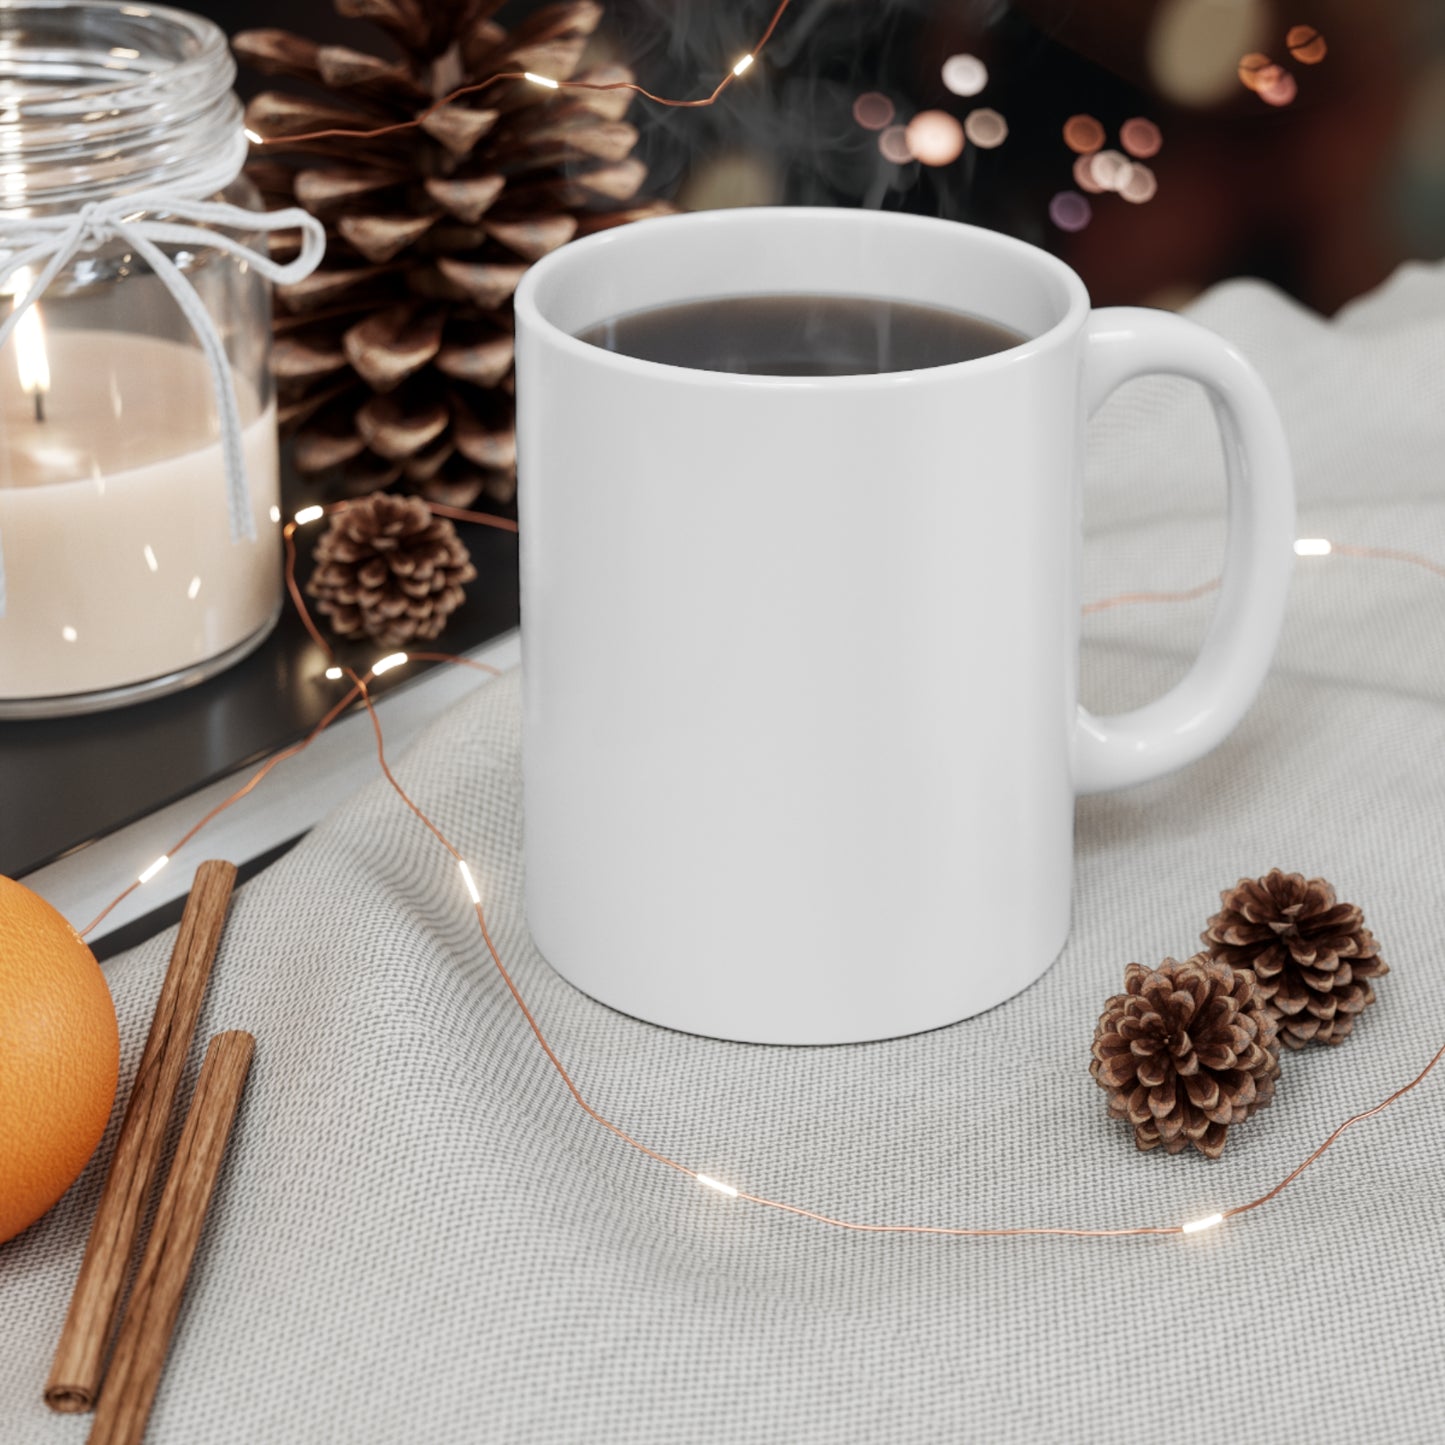 Believe In Magic - Ceramic Mug 11oz, Christmas Mug, Holiday Gift